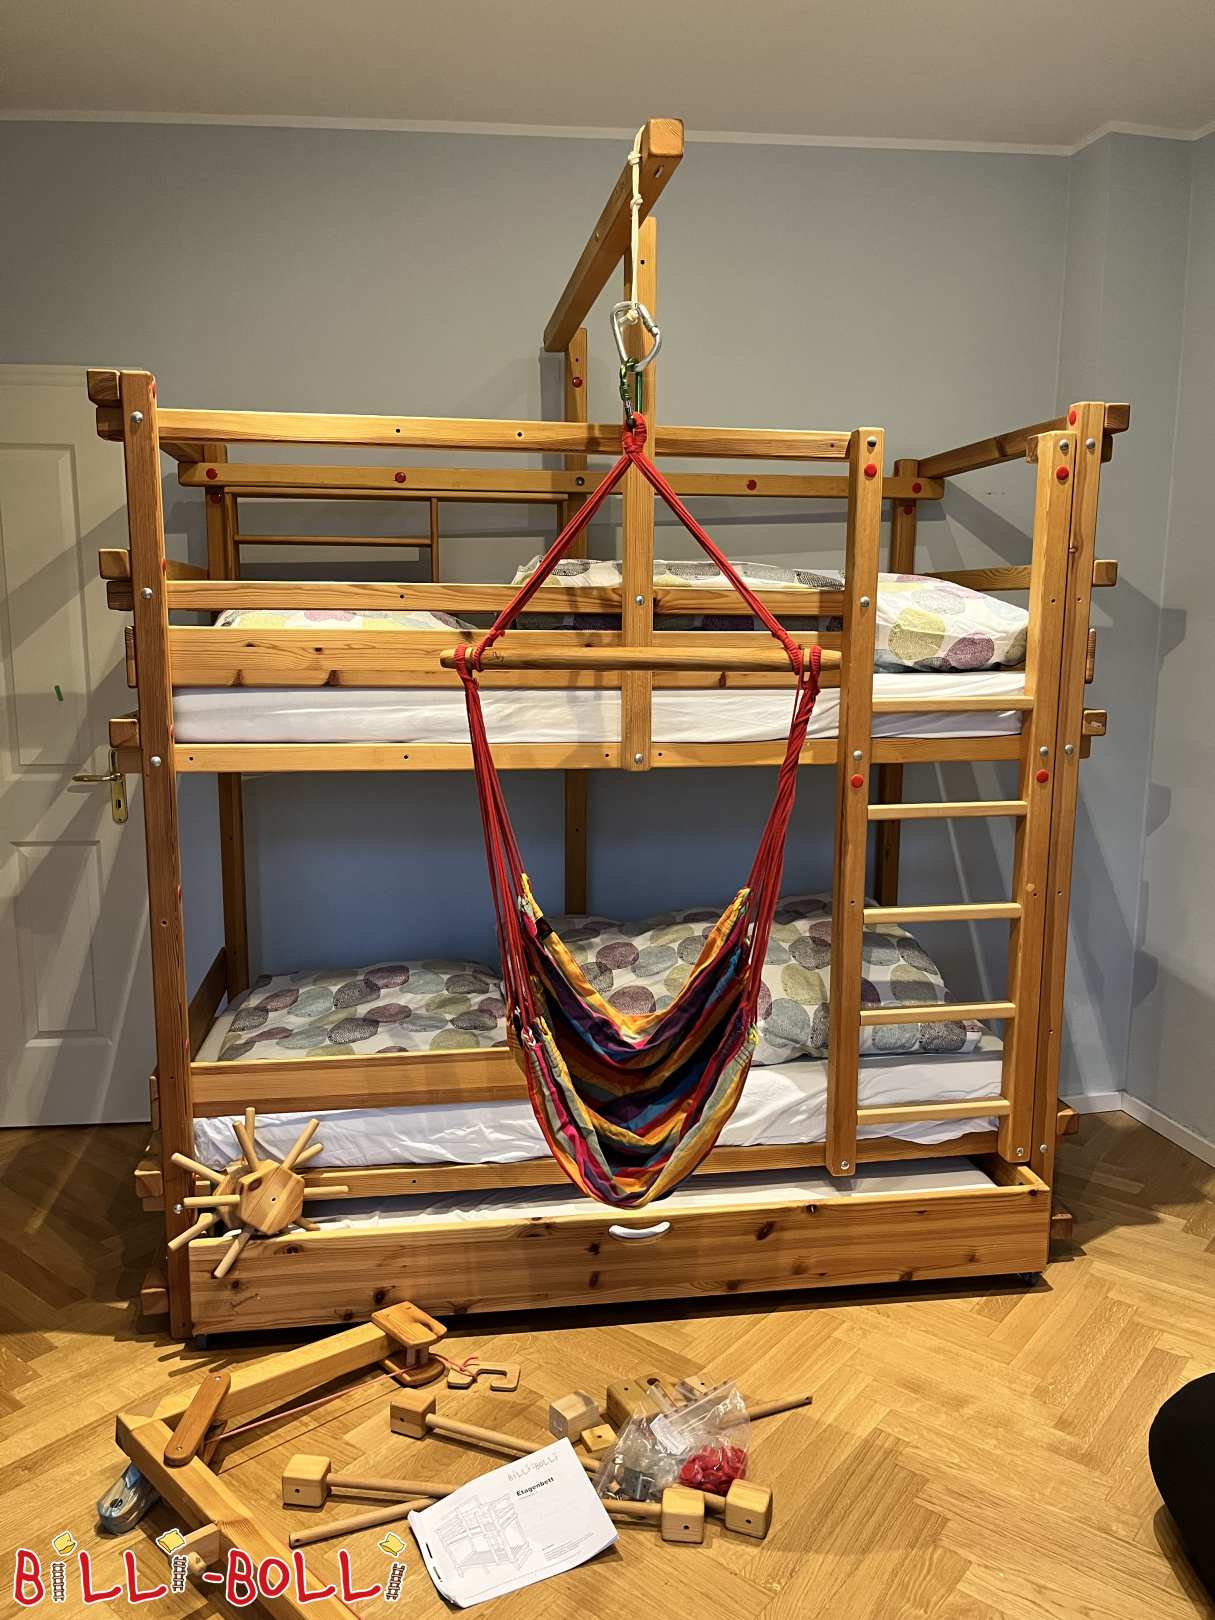 बर्लिन में दराज बिस्तर और कई सामान के साथ बंक बिस्तर (श्रेणी: चारपाई बिस्तर का इस्तेमाल किया)